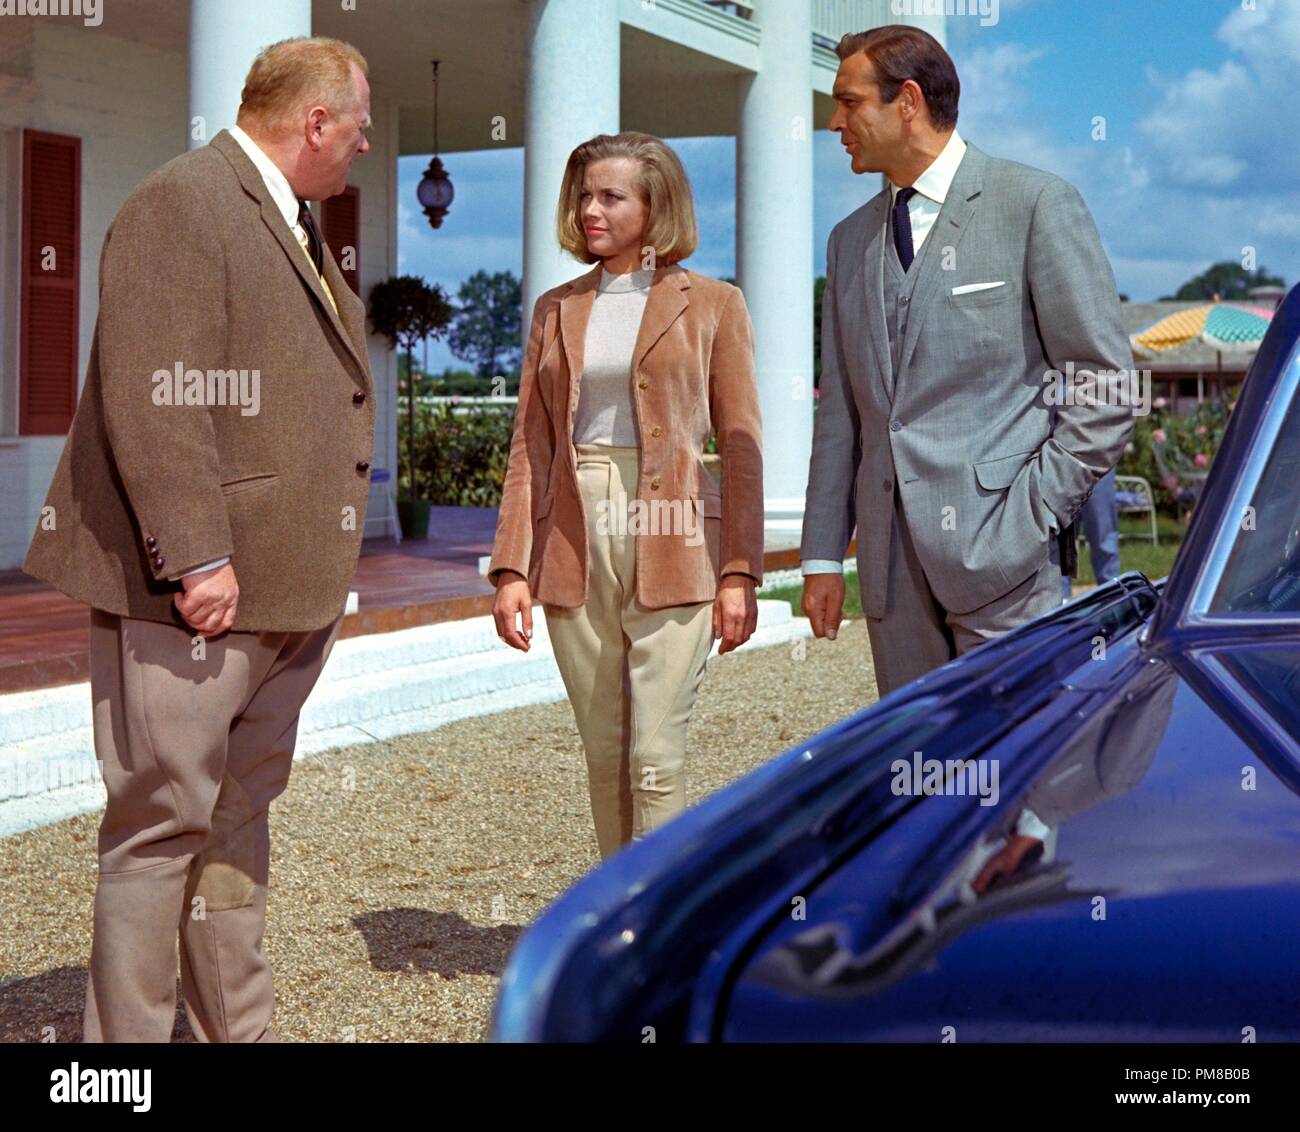 Studio Werbung noch: 'Goldfinger' Gert Frobe, Ehre Blackman, Sean Connery  1964 UA Datei Referenz # 31781 078 Stockfotografie - Alamy